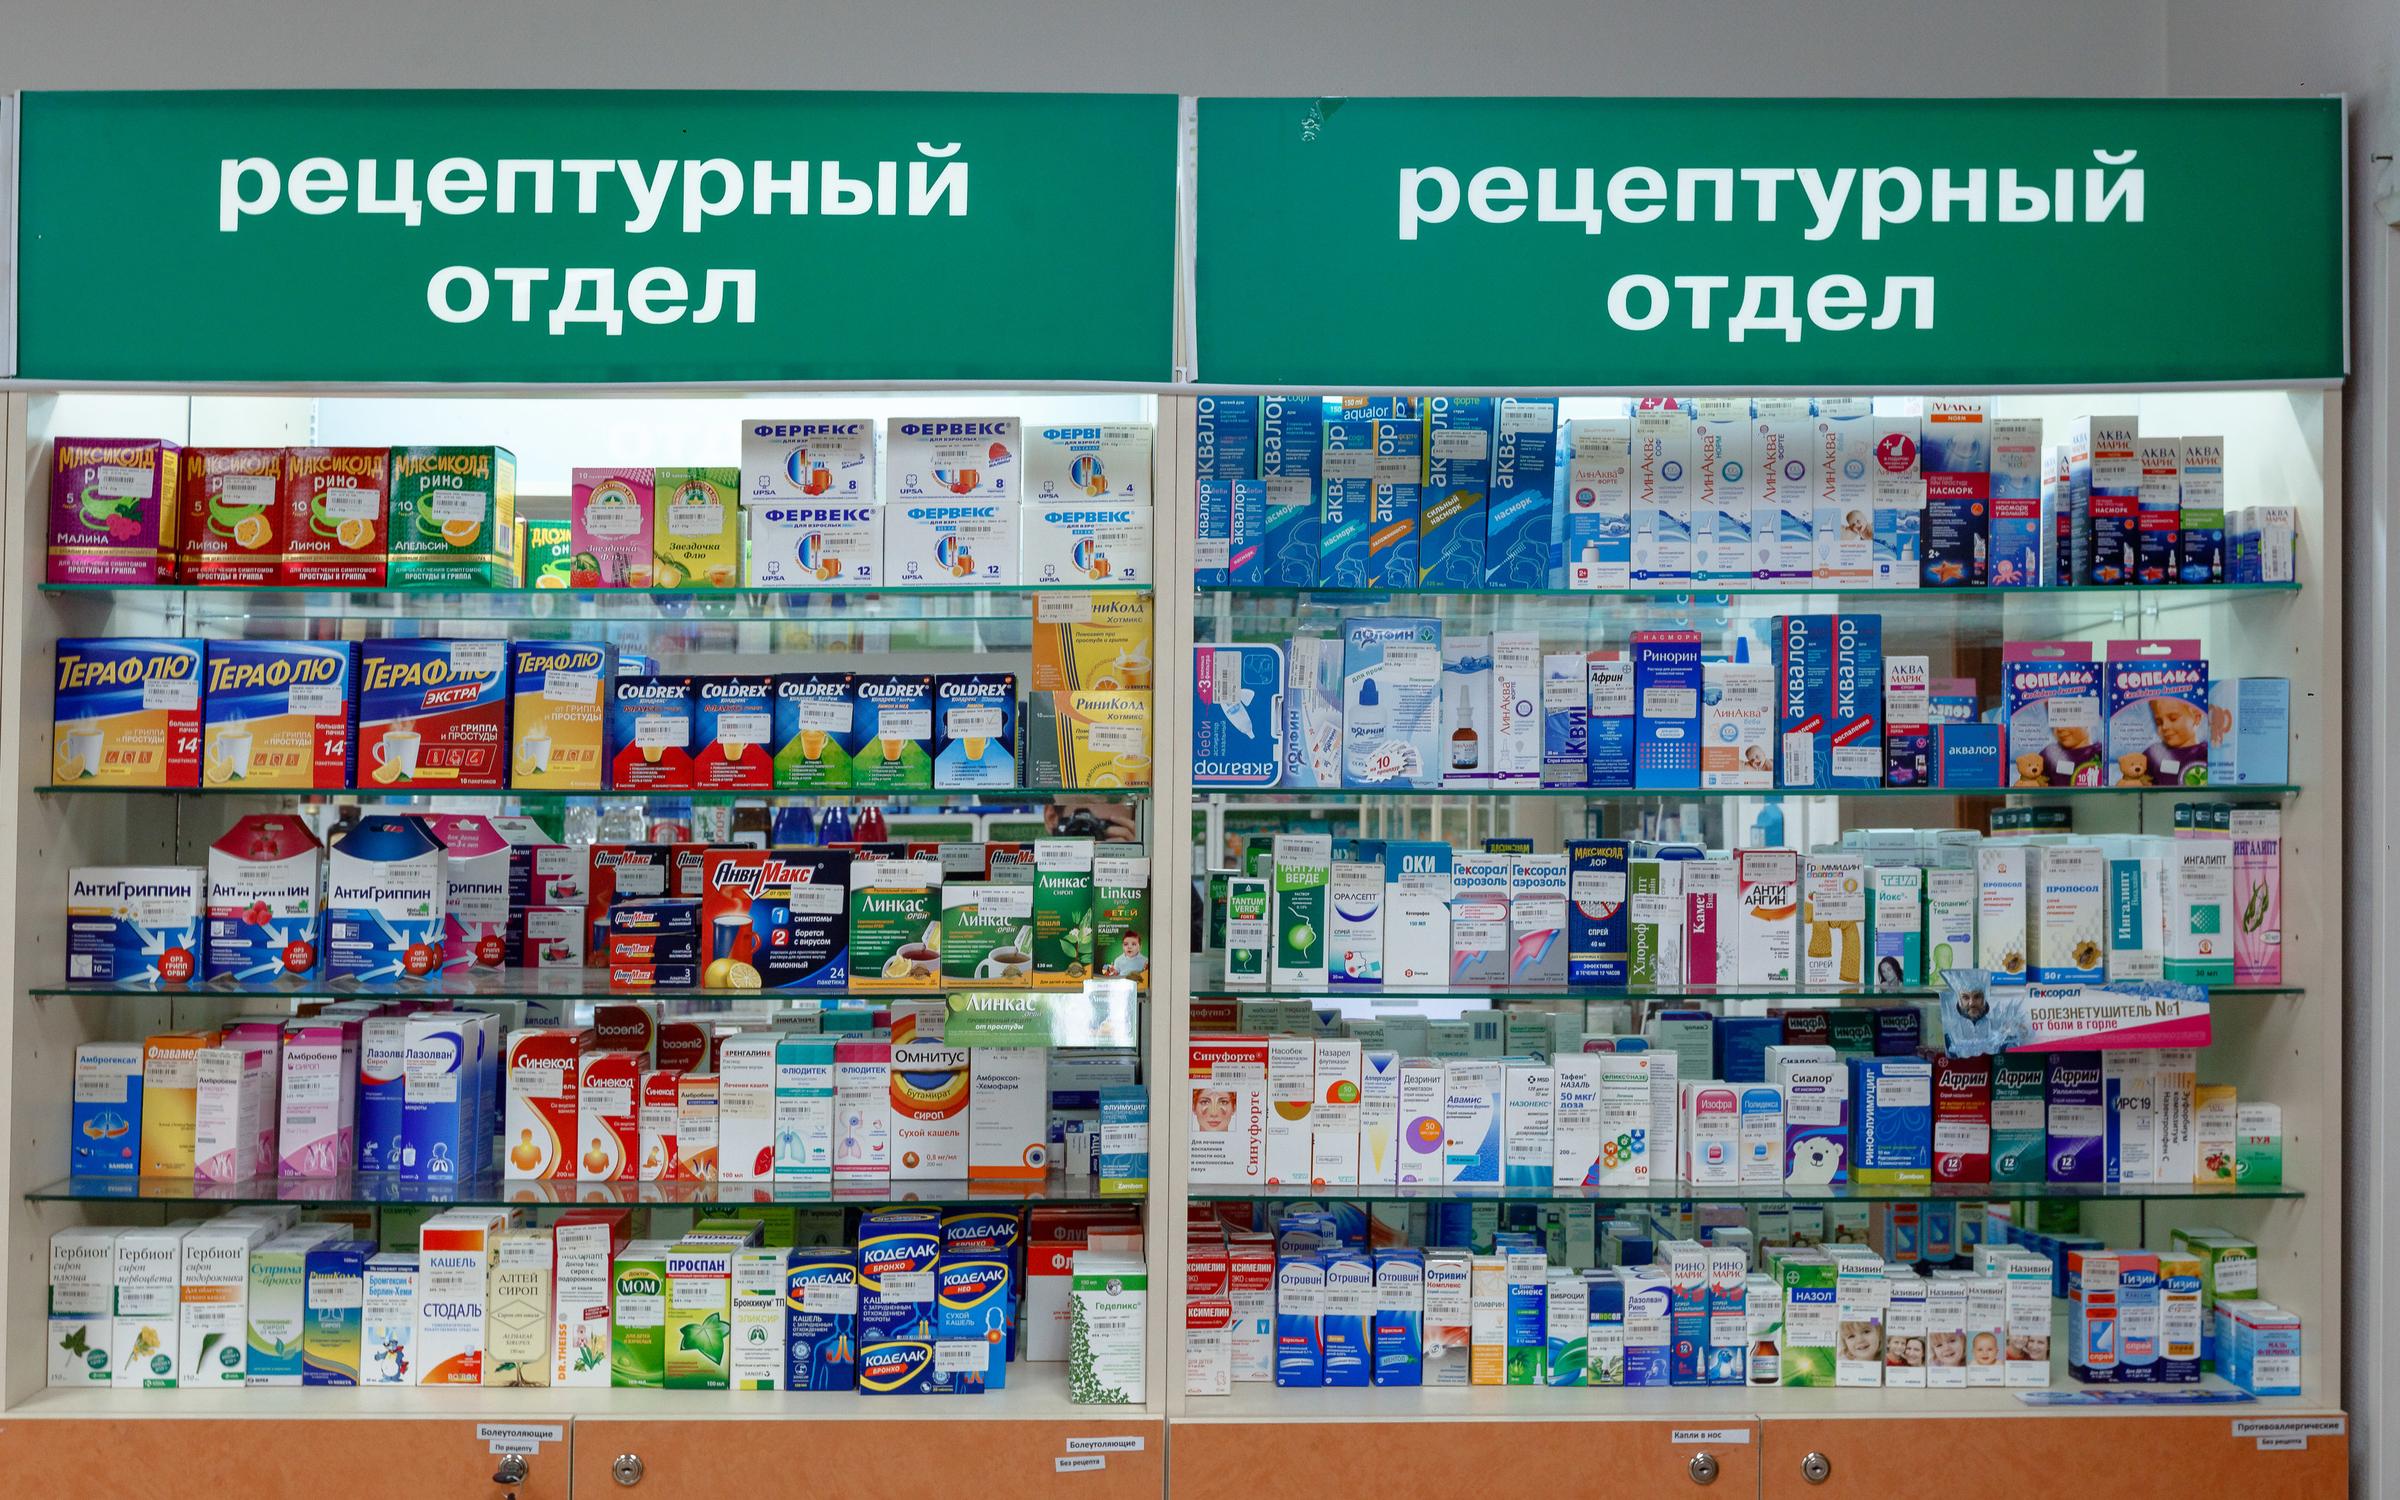 Аптека Форум Москва